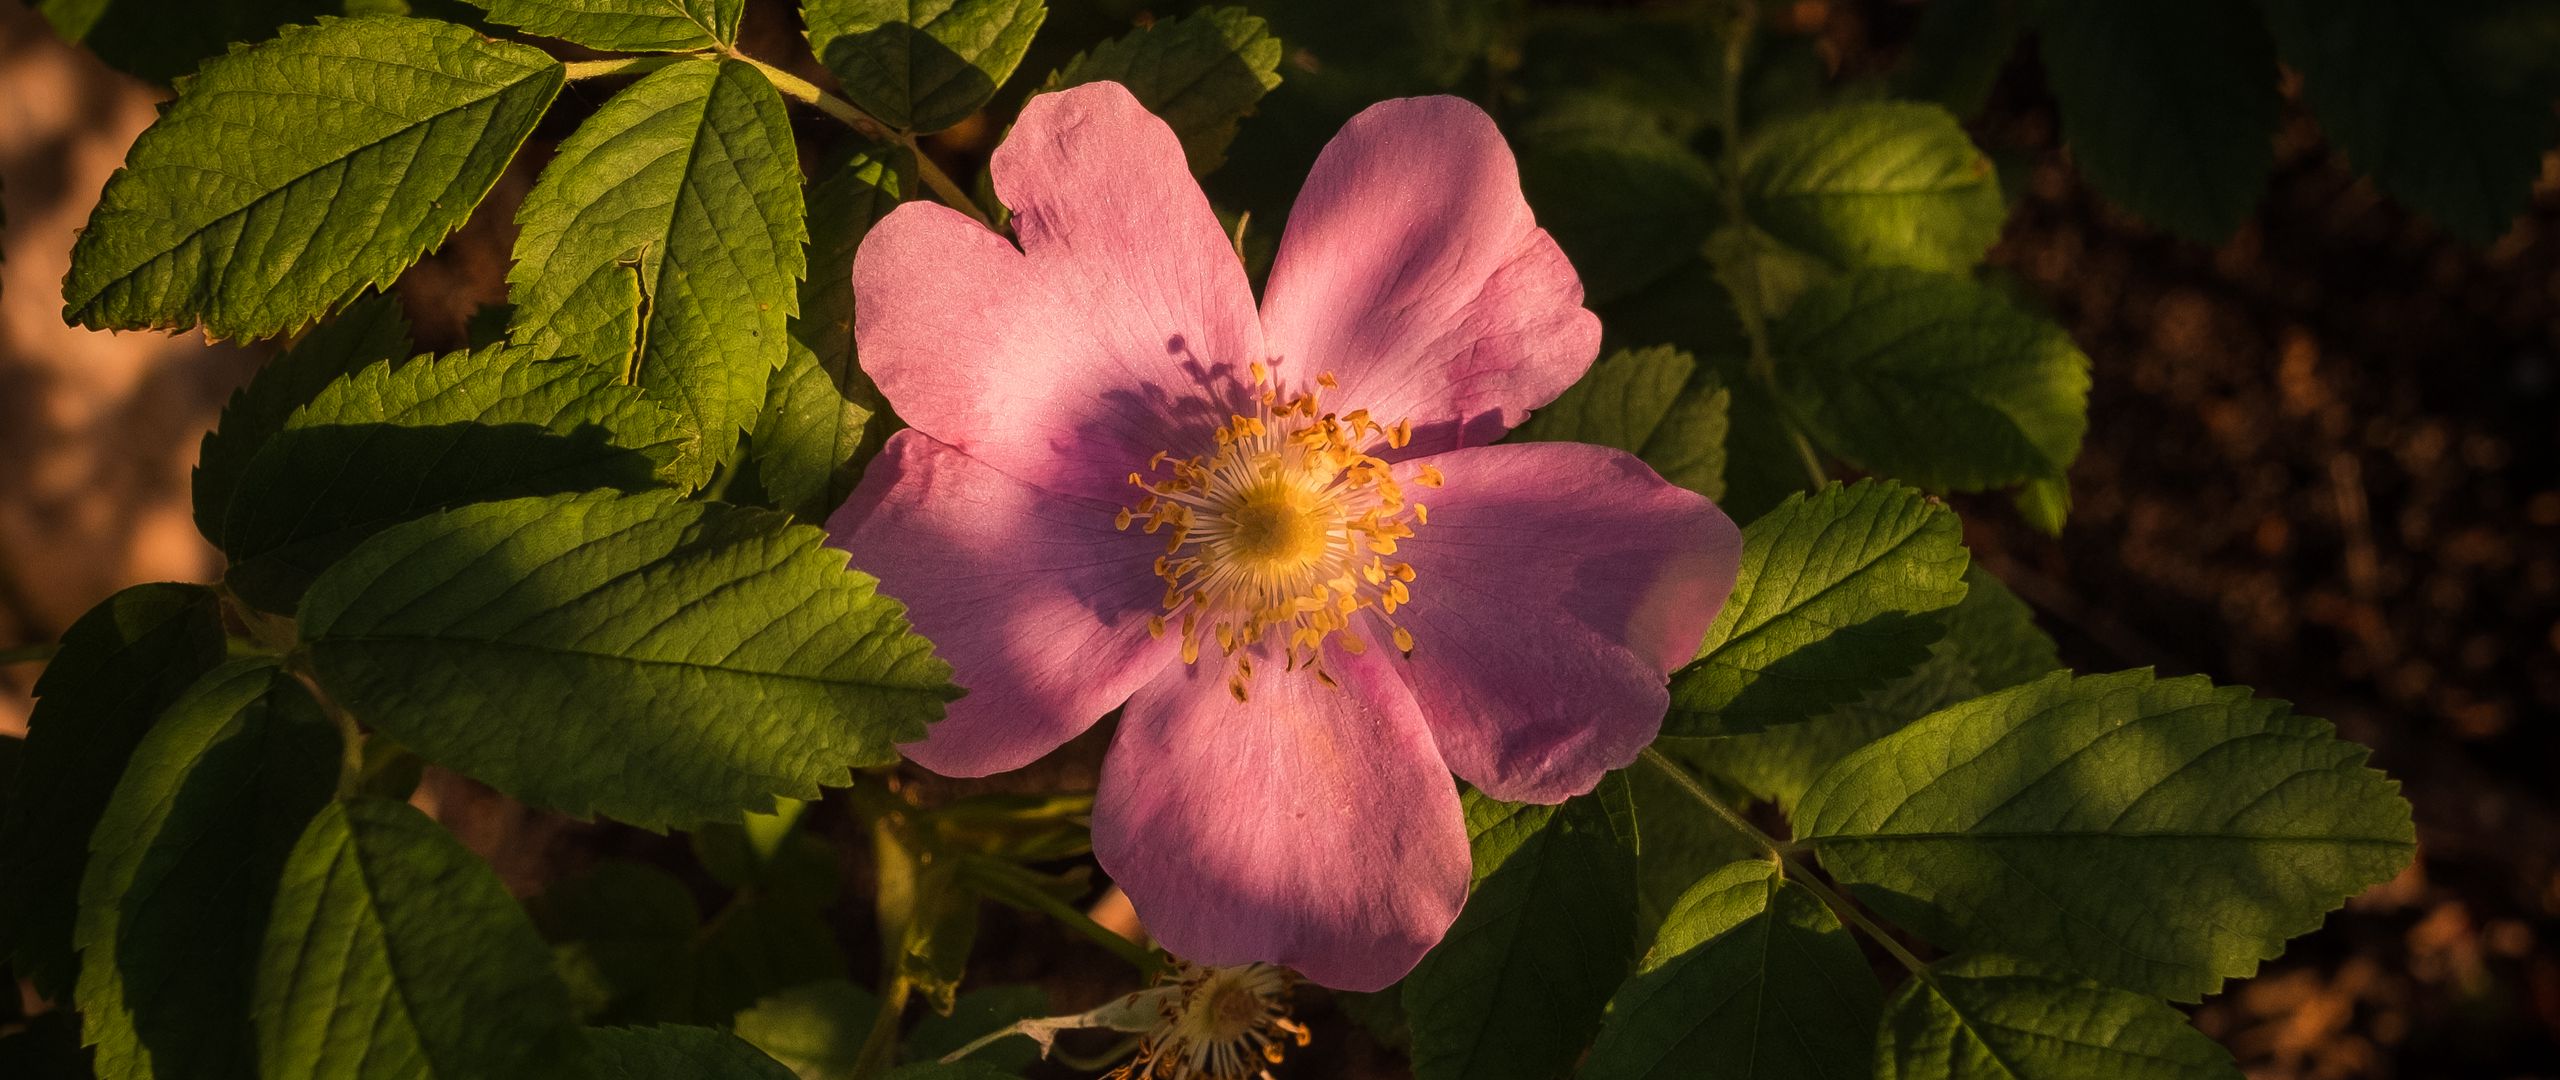 Fondos de pantalla Pink flower at sunlight